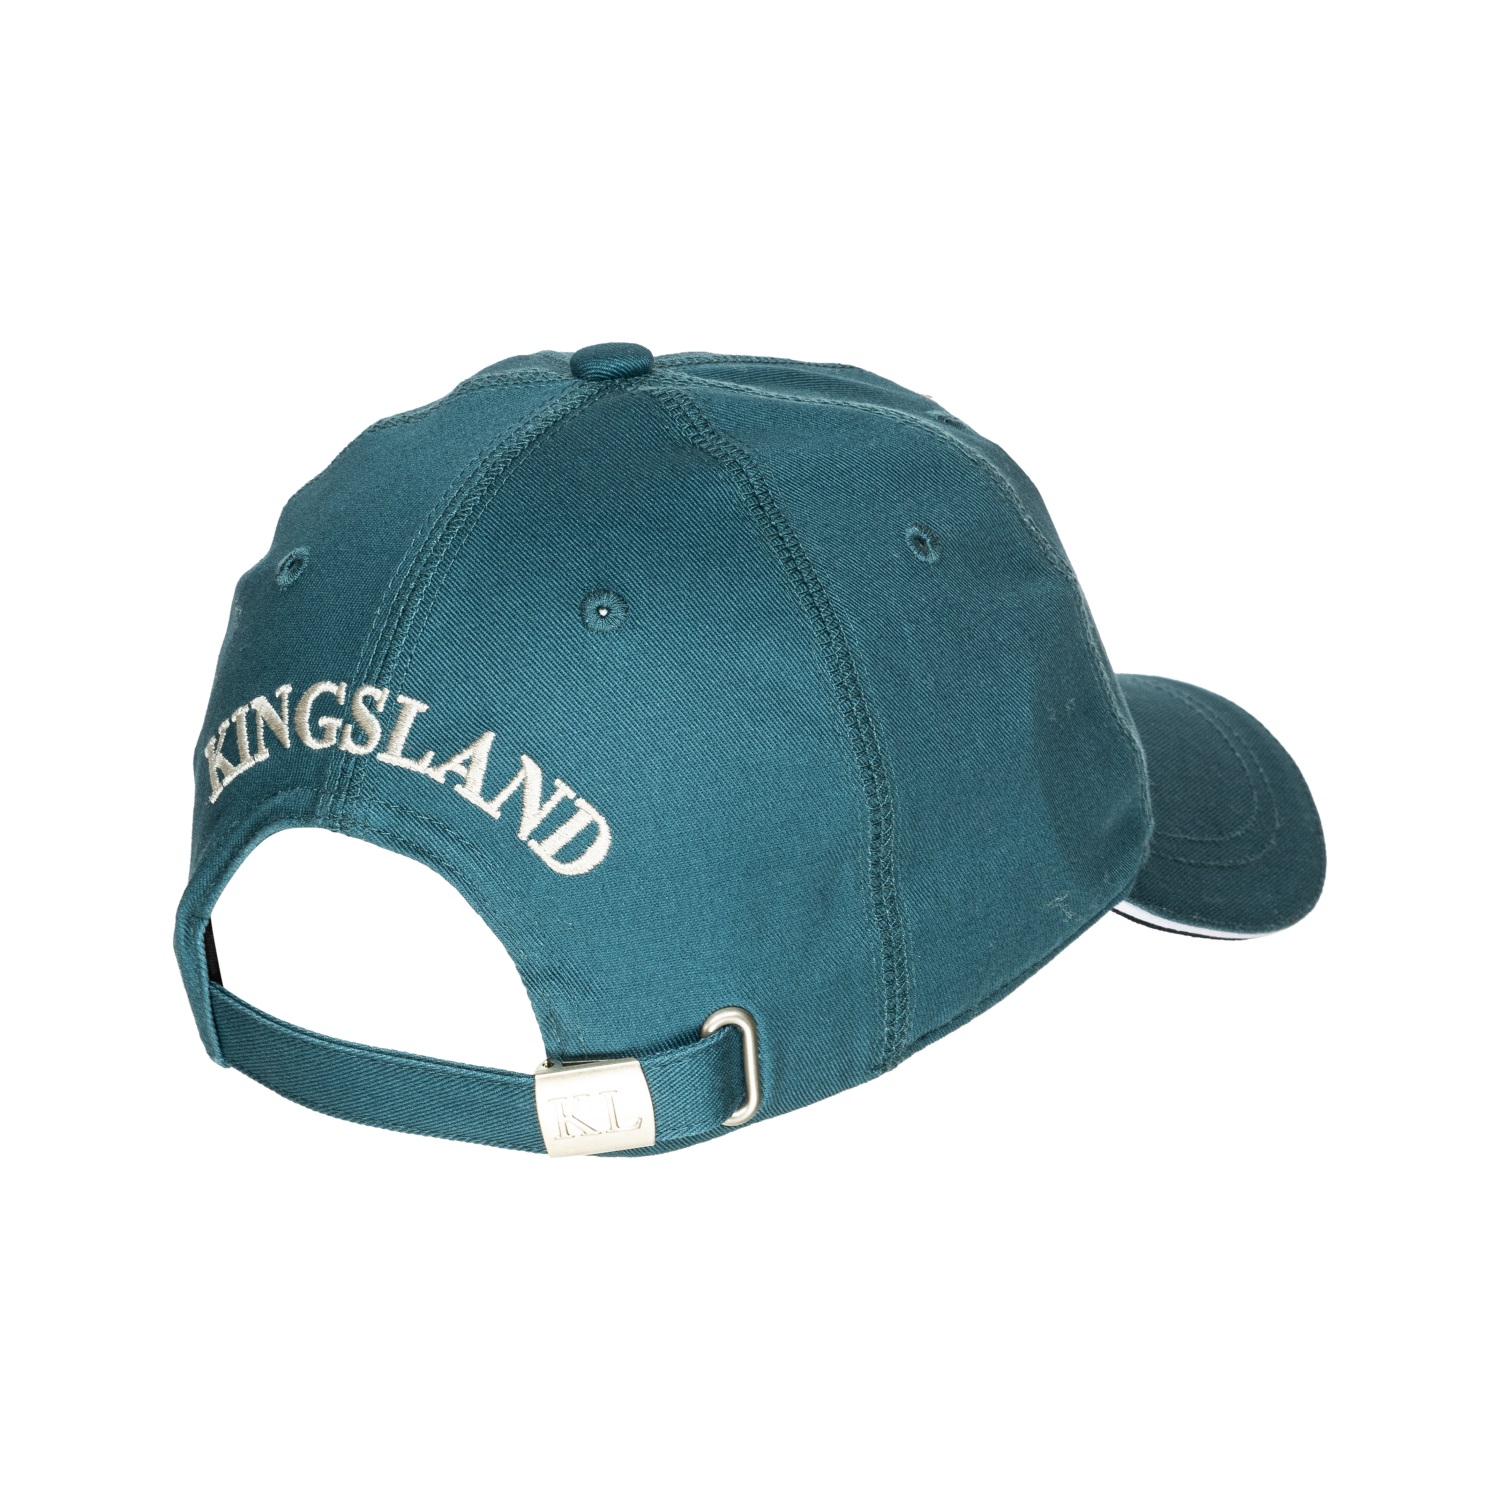 KINGSLAND Unisex Classic Limited Cap, Basecap - blue grap - onesize - 8